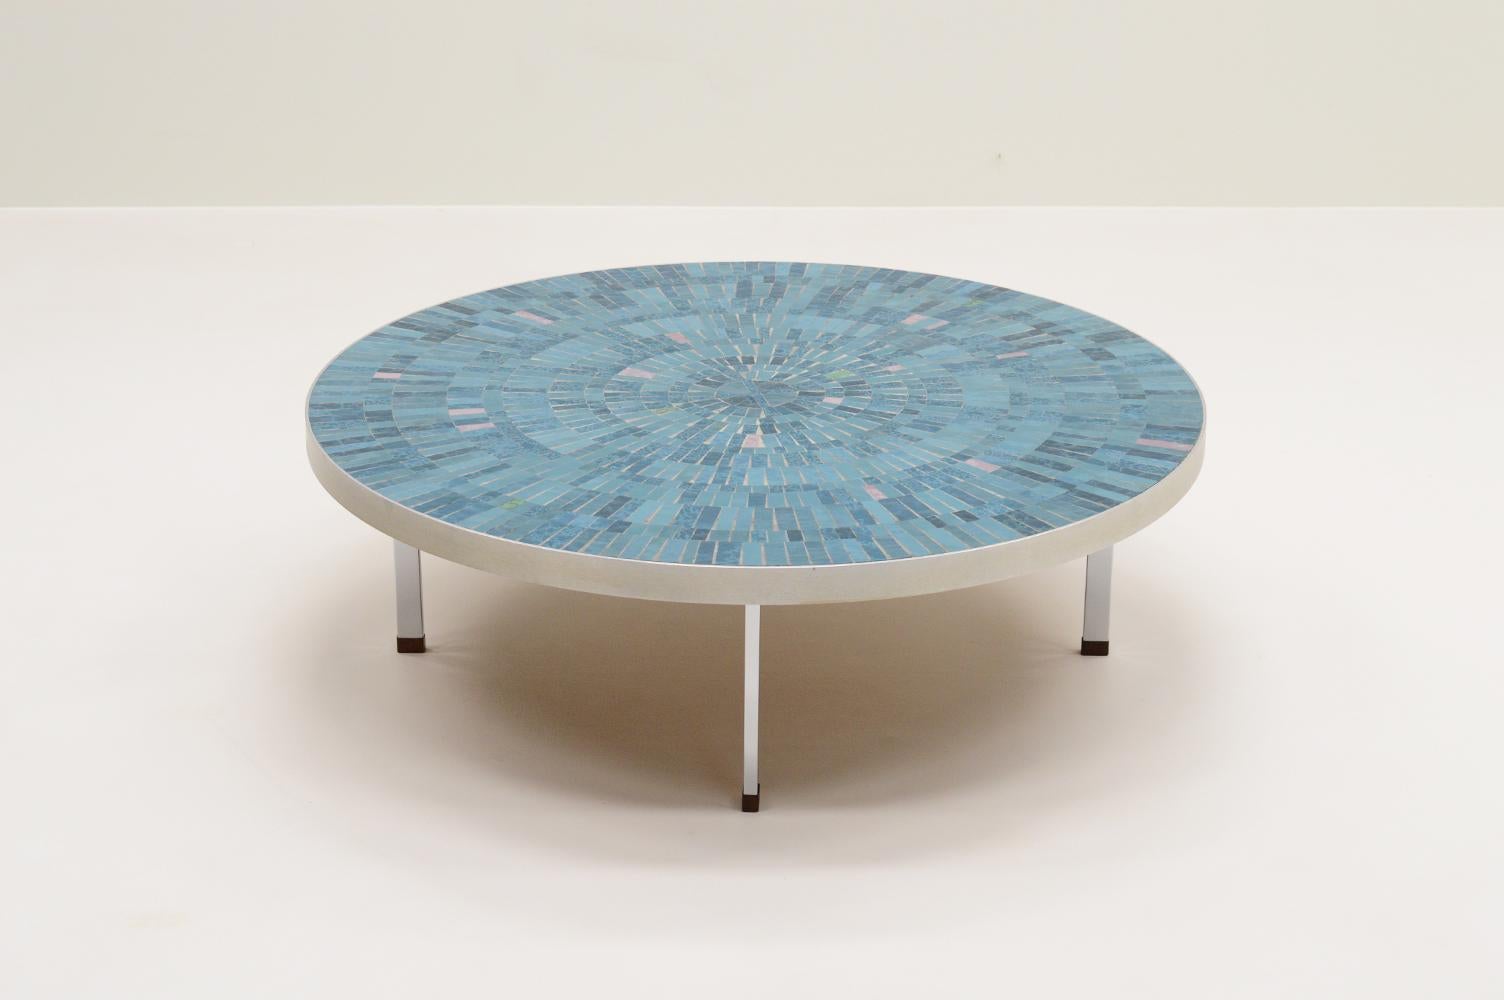 Mid-Century Modern Mosaic coffee table by Berthold Müller for Mosaikwerkstatt Berthold Müller 1960s